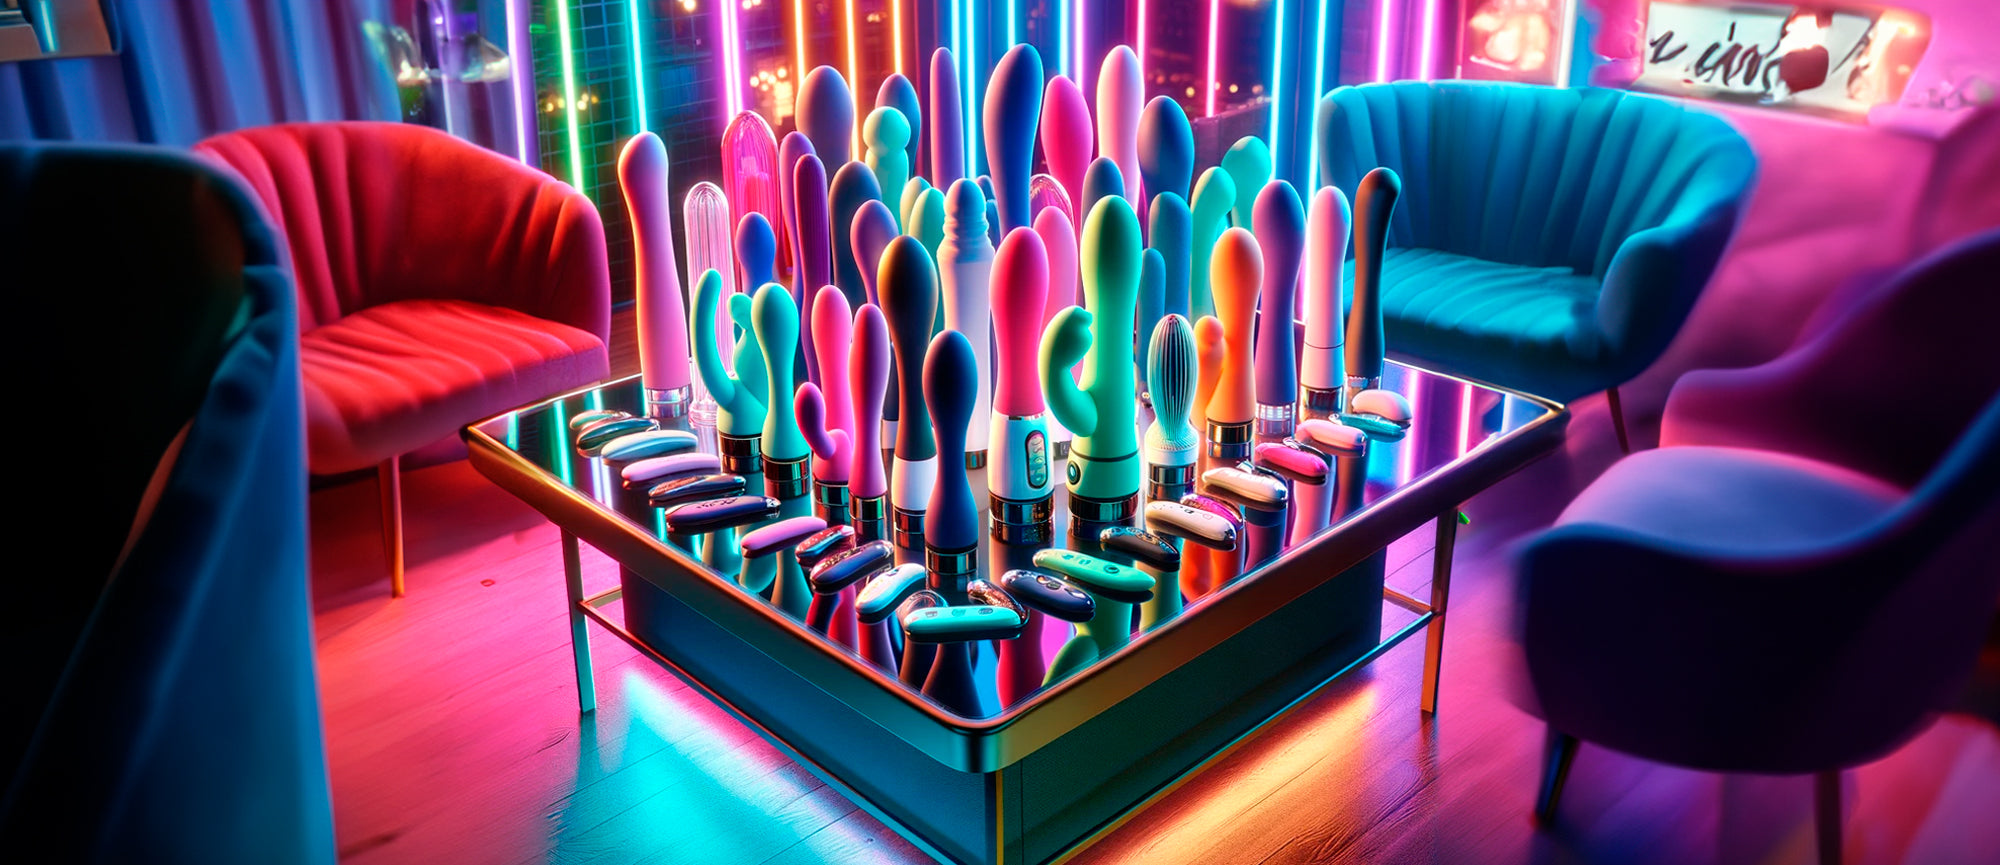 Guia do Sex Toy: Encontre o brinquedo erótico ideal para você. Imagem criada por IA de uma mesa repleta de vibradores.